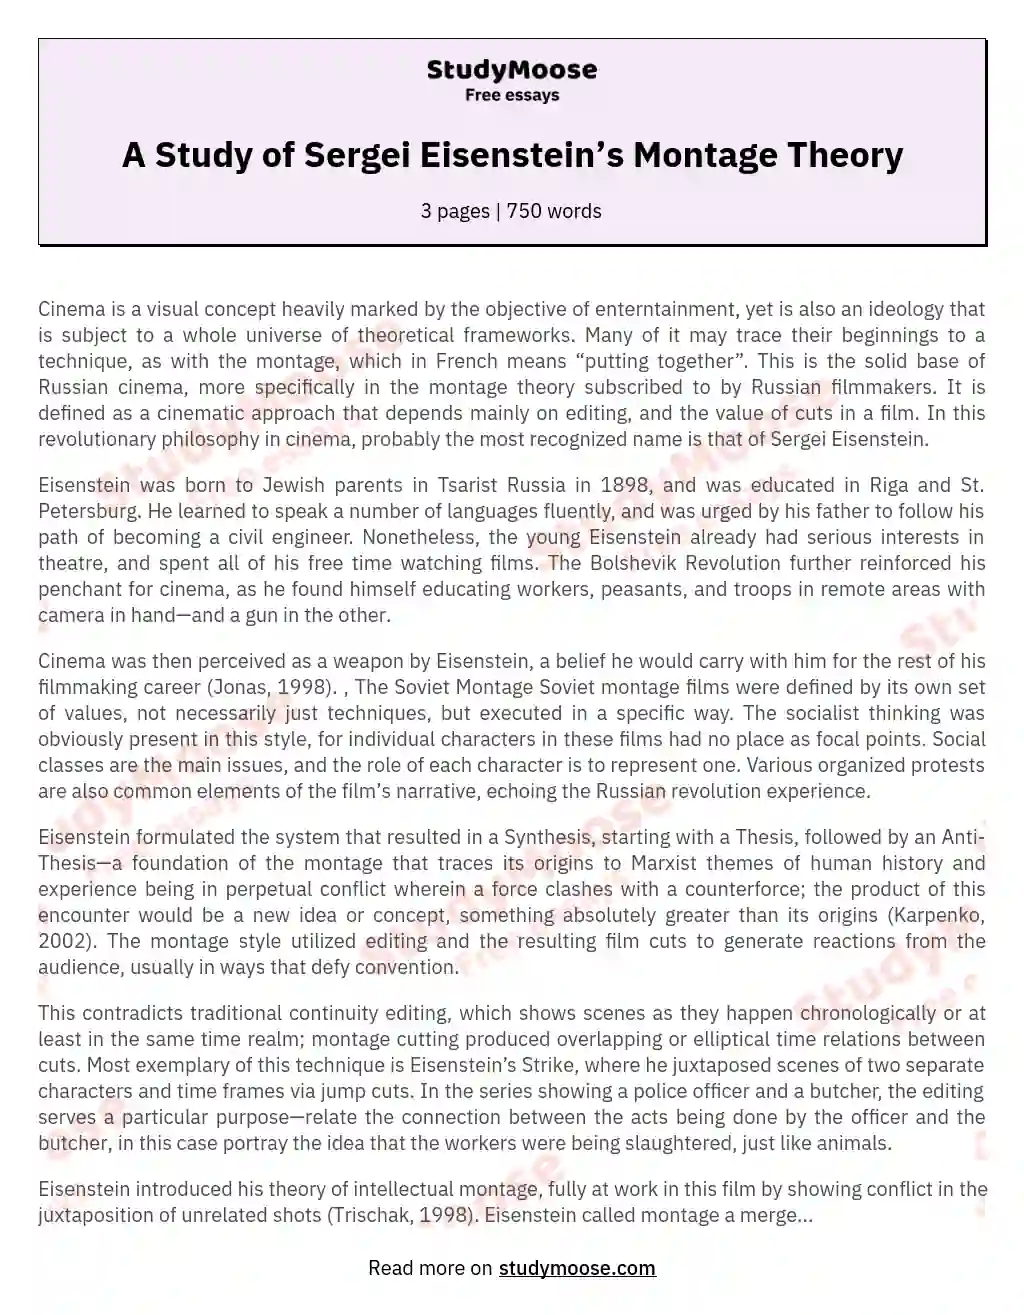 A Study of Sergei Eisenstein’s Montage Theory essay